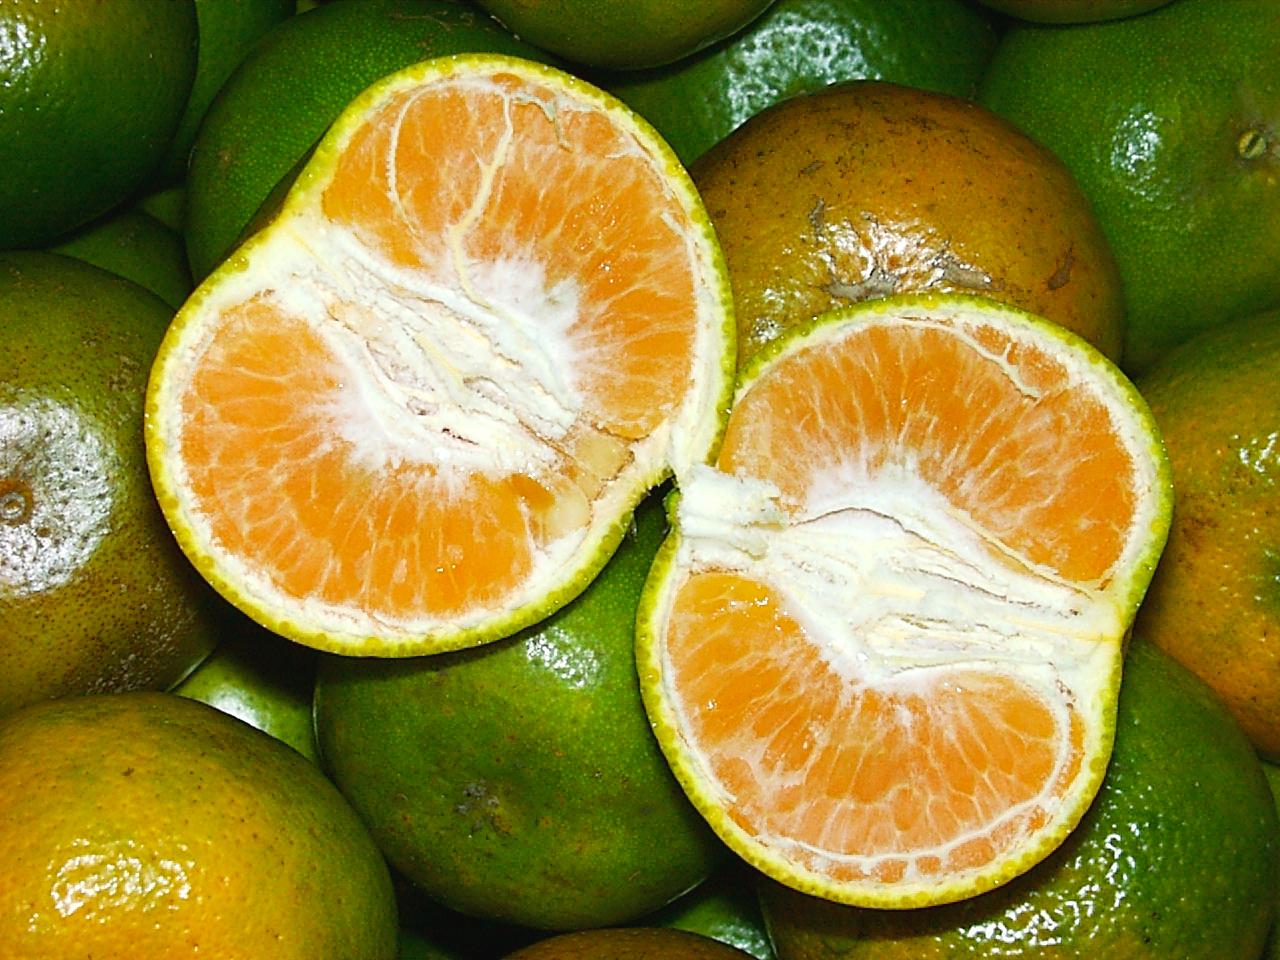 Огурец мандарин. Померанец зеленый фрукт. Цитрус снаружи зелёный внутри оранжевый. Цитрус с зеленой кожурой. Танжерин фрукт зеленый.